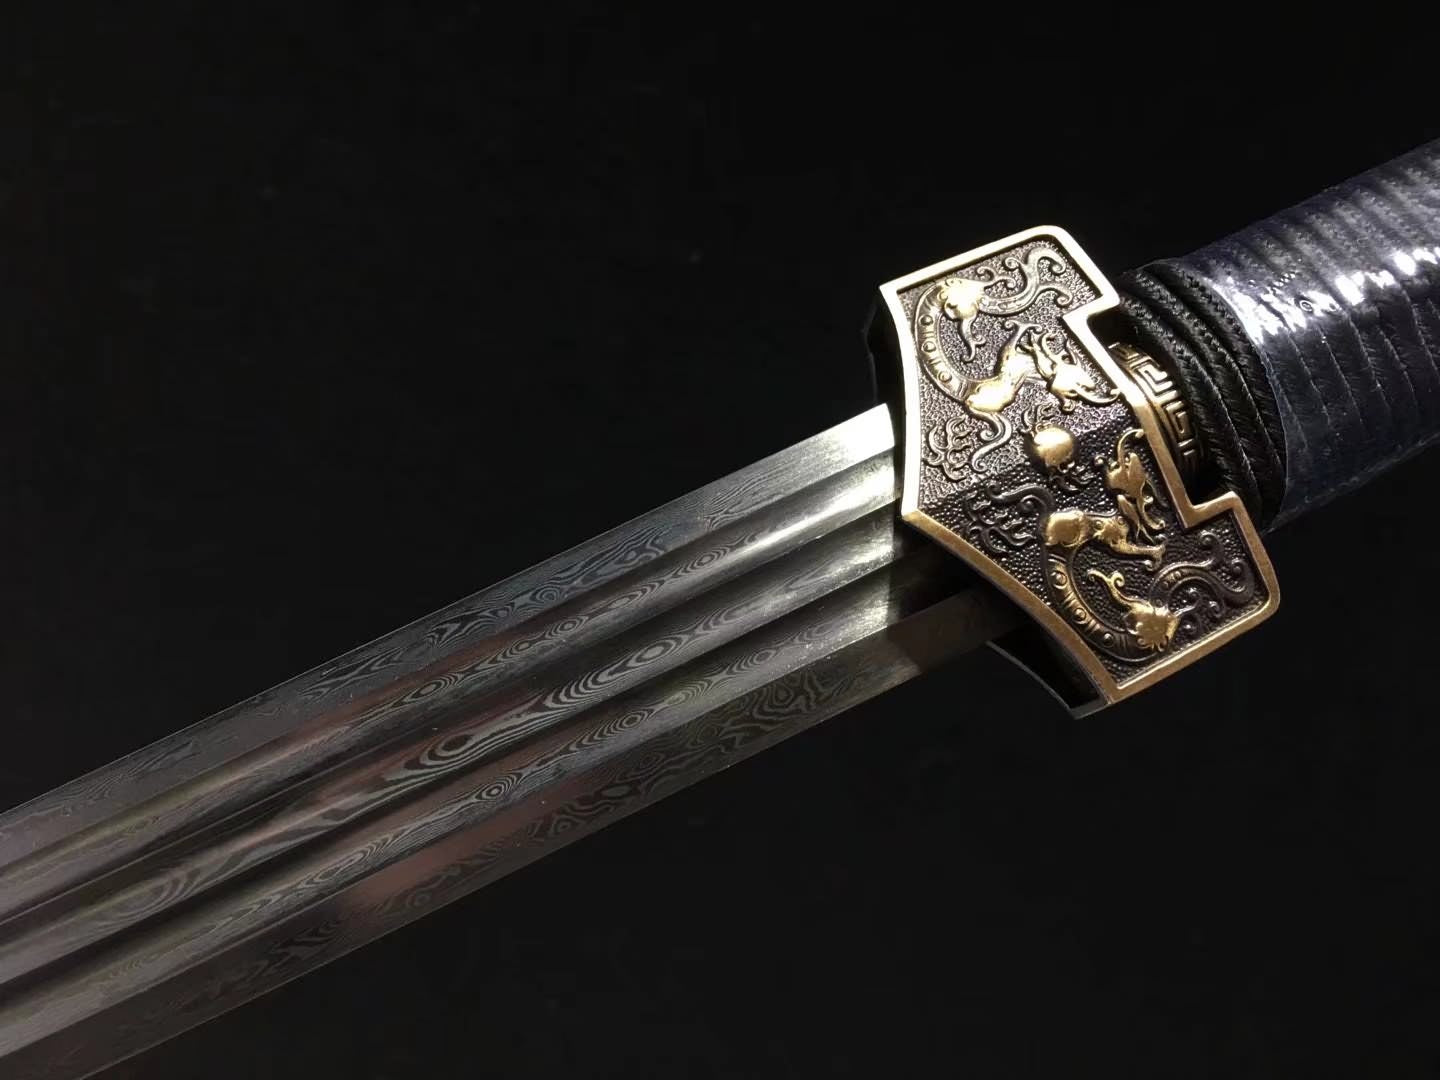 Han Sword Real,Damascus Steel Blades,Brass Fittings,Ebony Scabbard